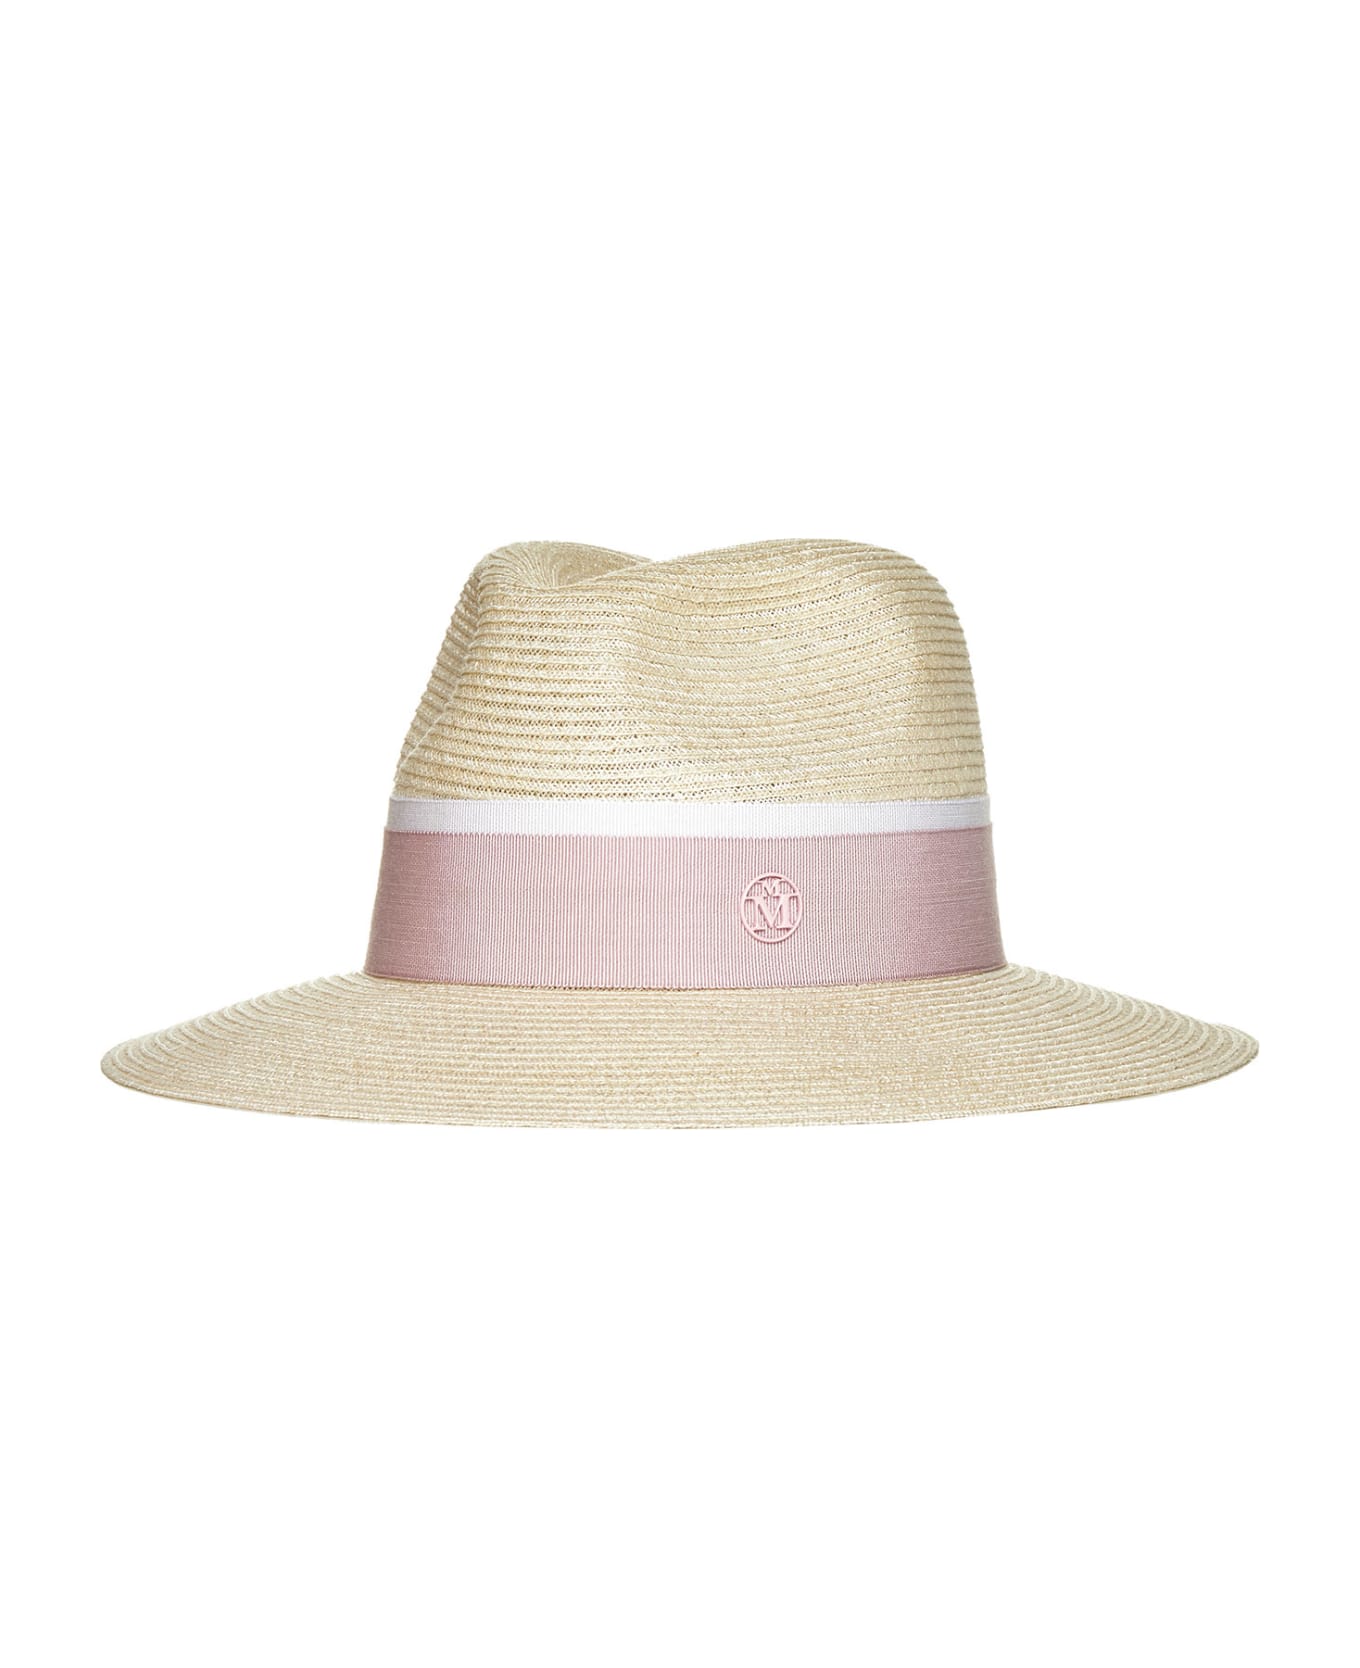 Maison Michel Hat - Natural pink